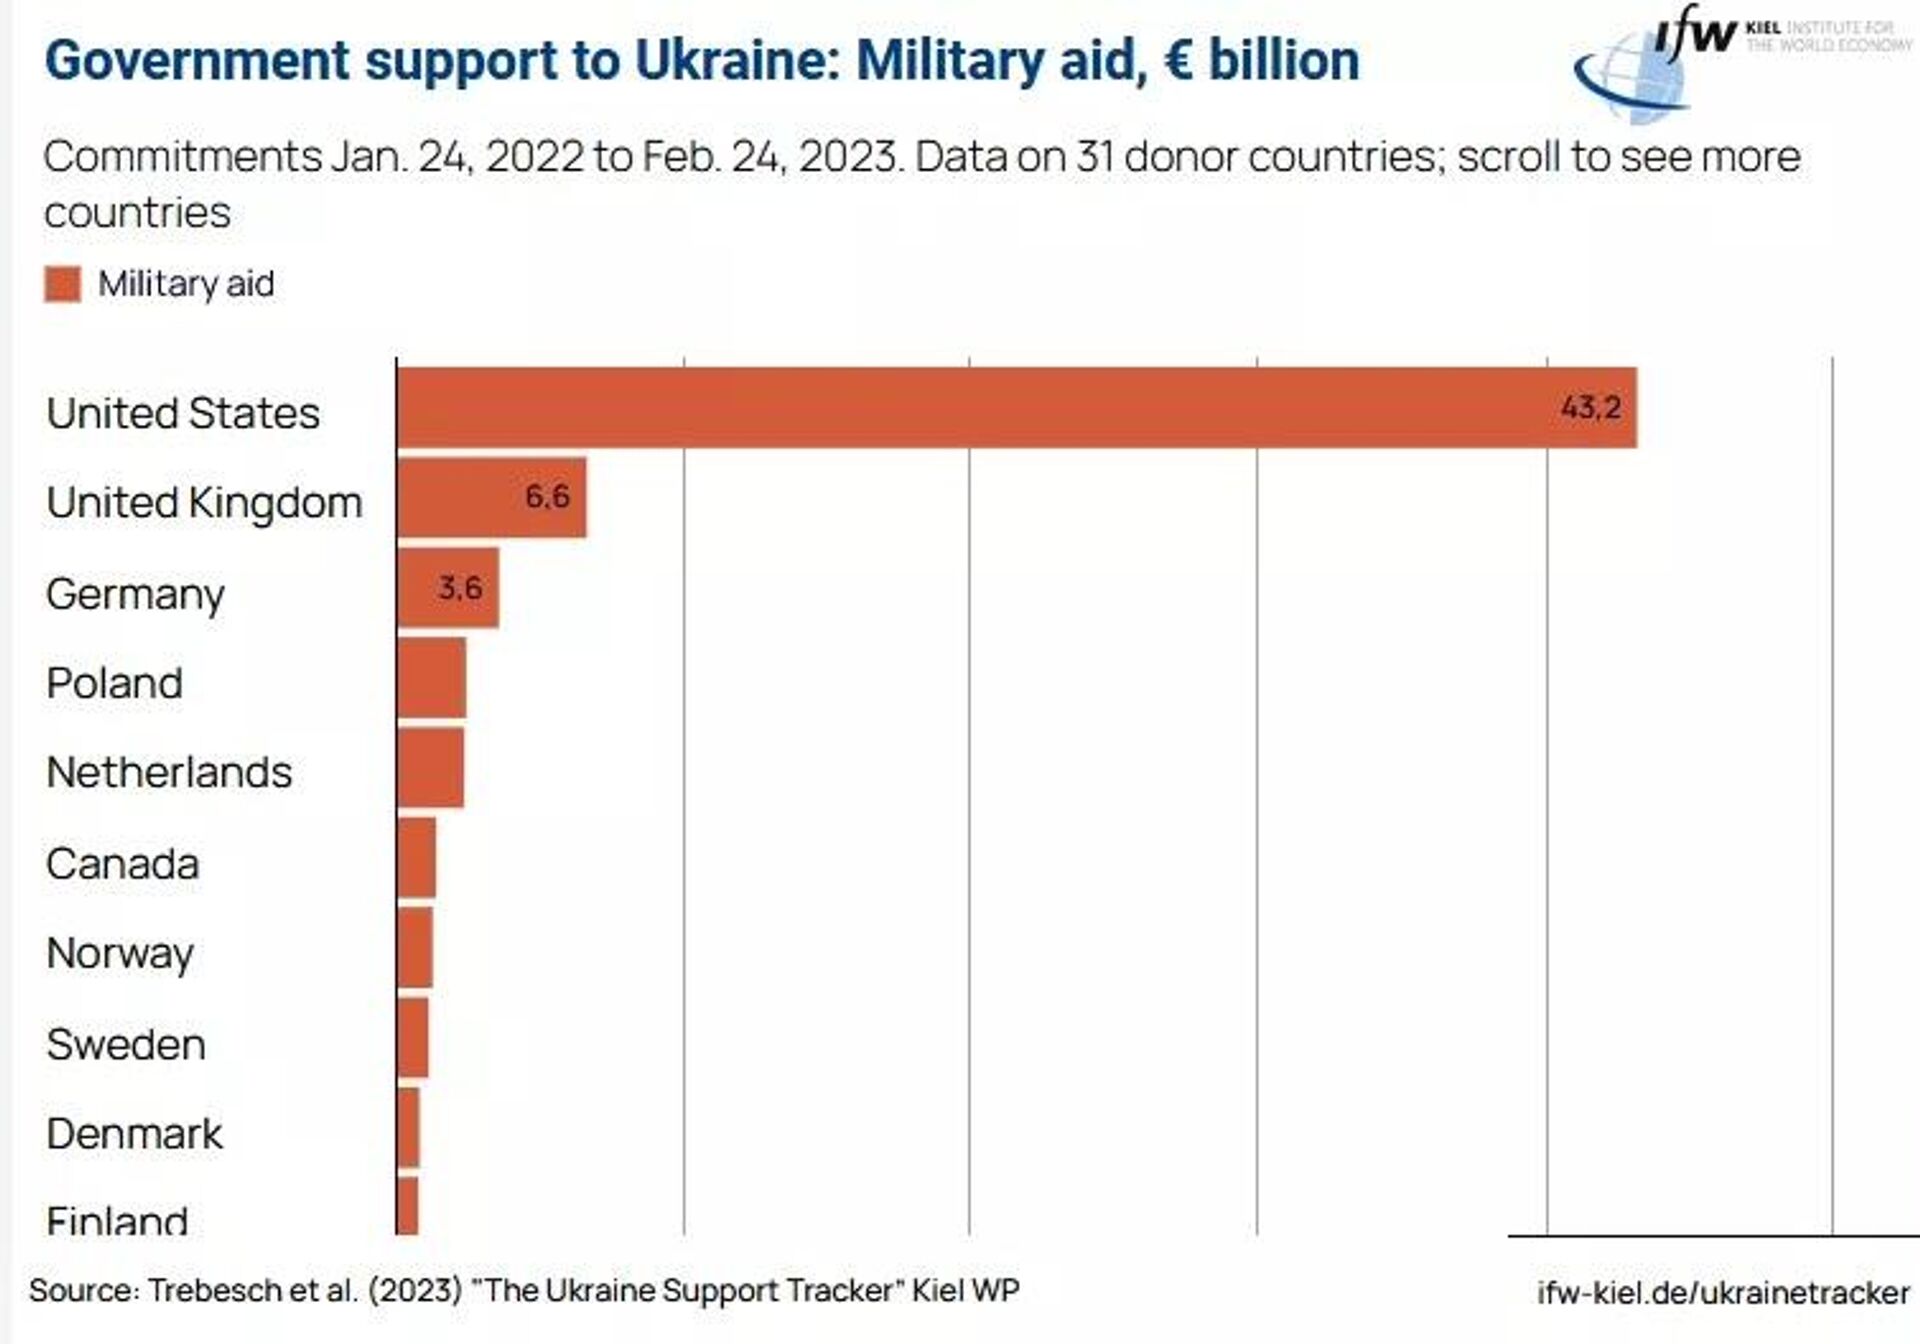 Kiel Dünya Ekonomi Enstitüsü verilerine göre ülkelerin Ukrayna'ya sunduğu askeri yardım (AB kurumları hariç). - Sputnik Türkiye, 1920, 26.04.2023